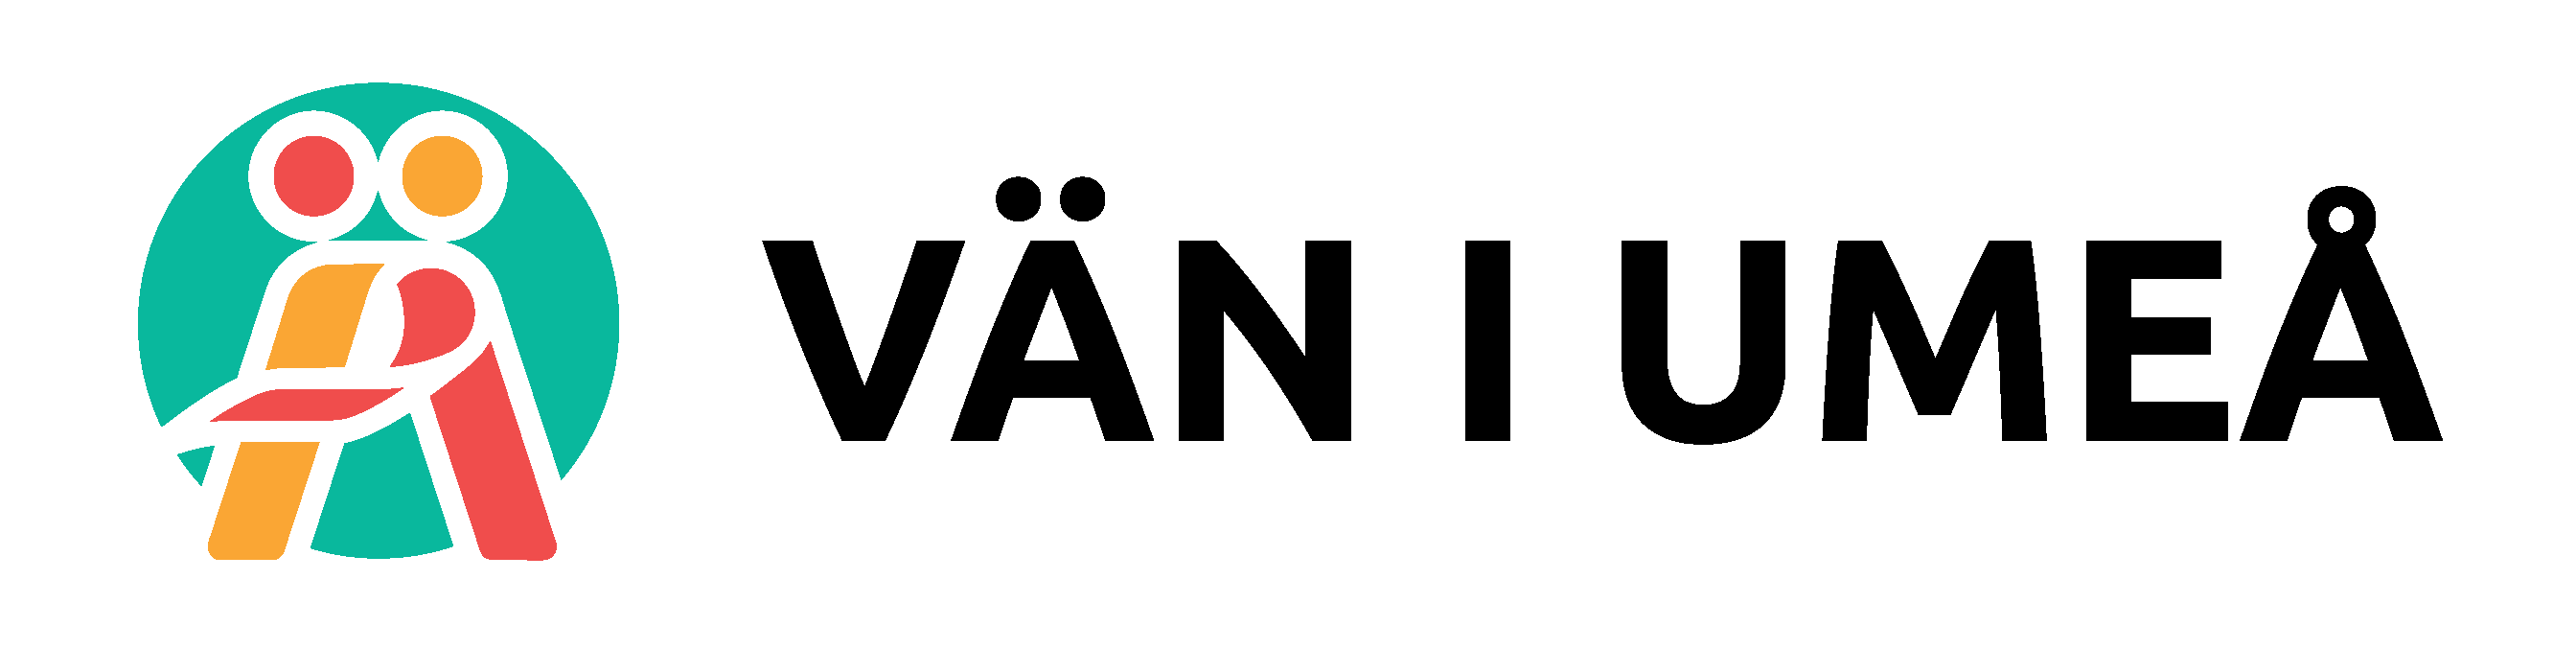 Vän i Umeå logo-10